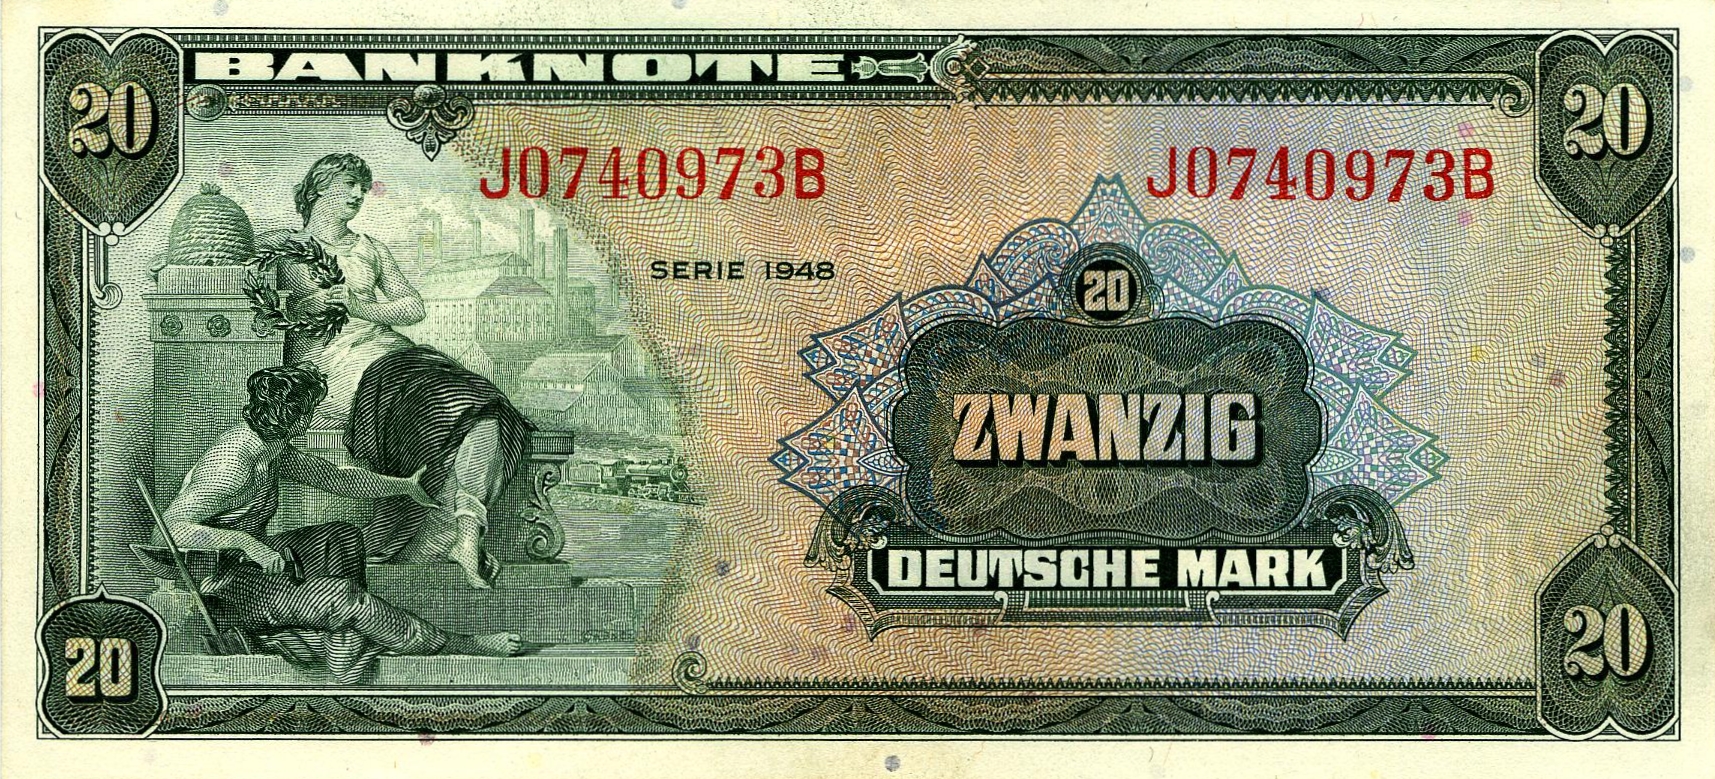 20 Deutsche Mark (1948) - obverse